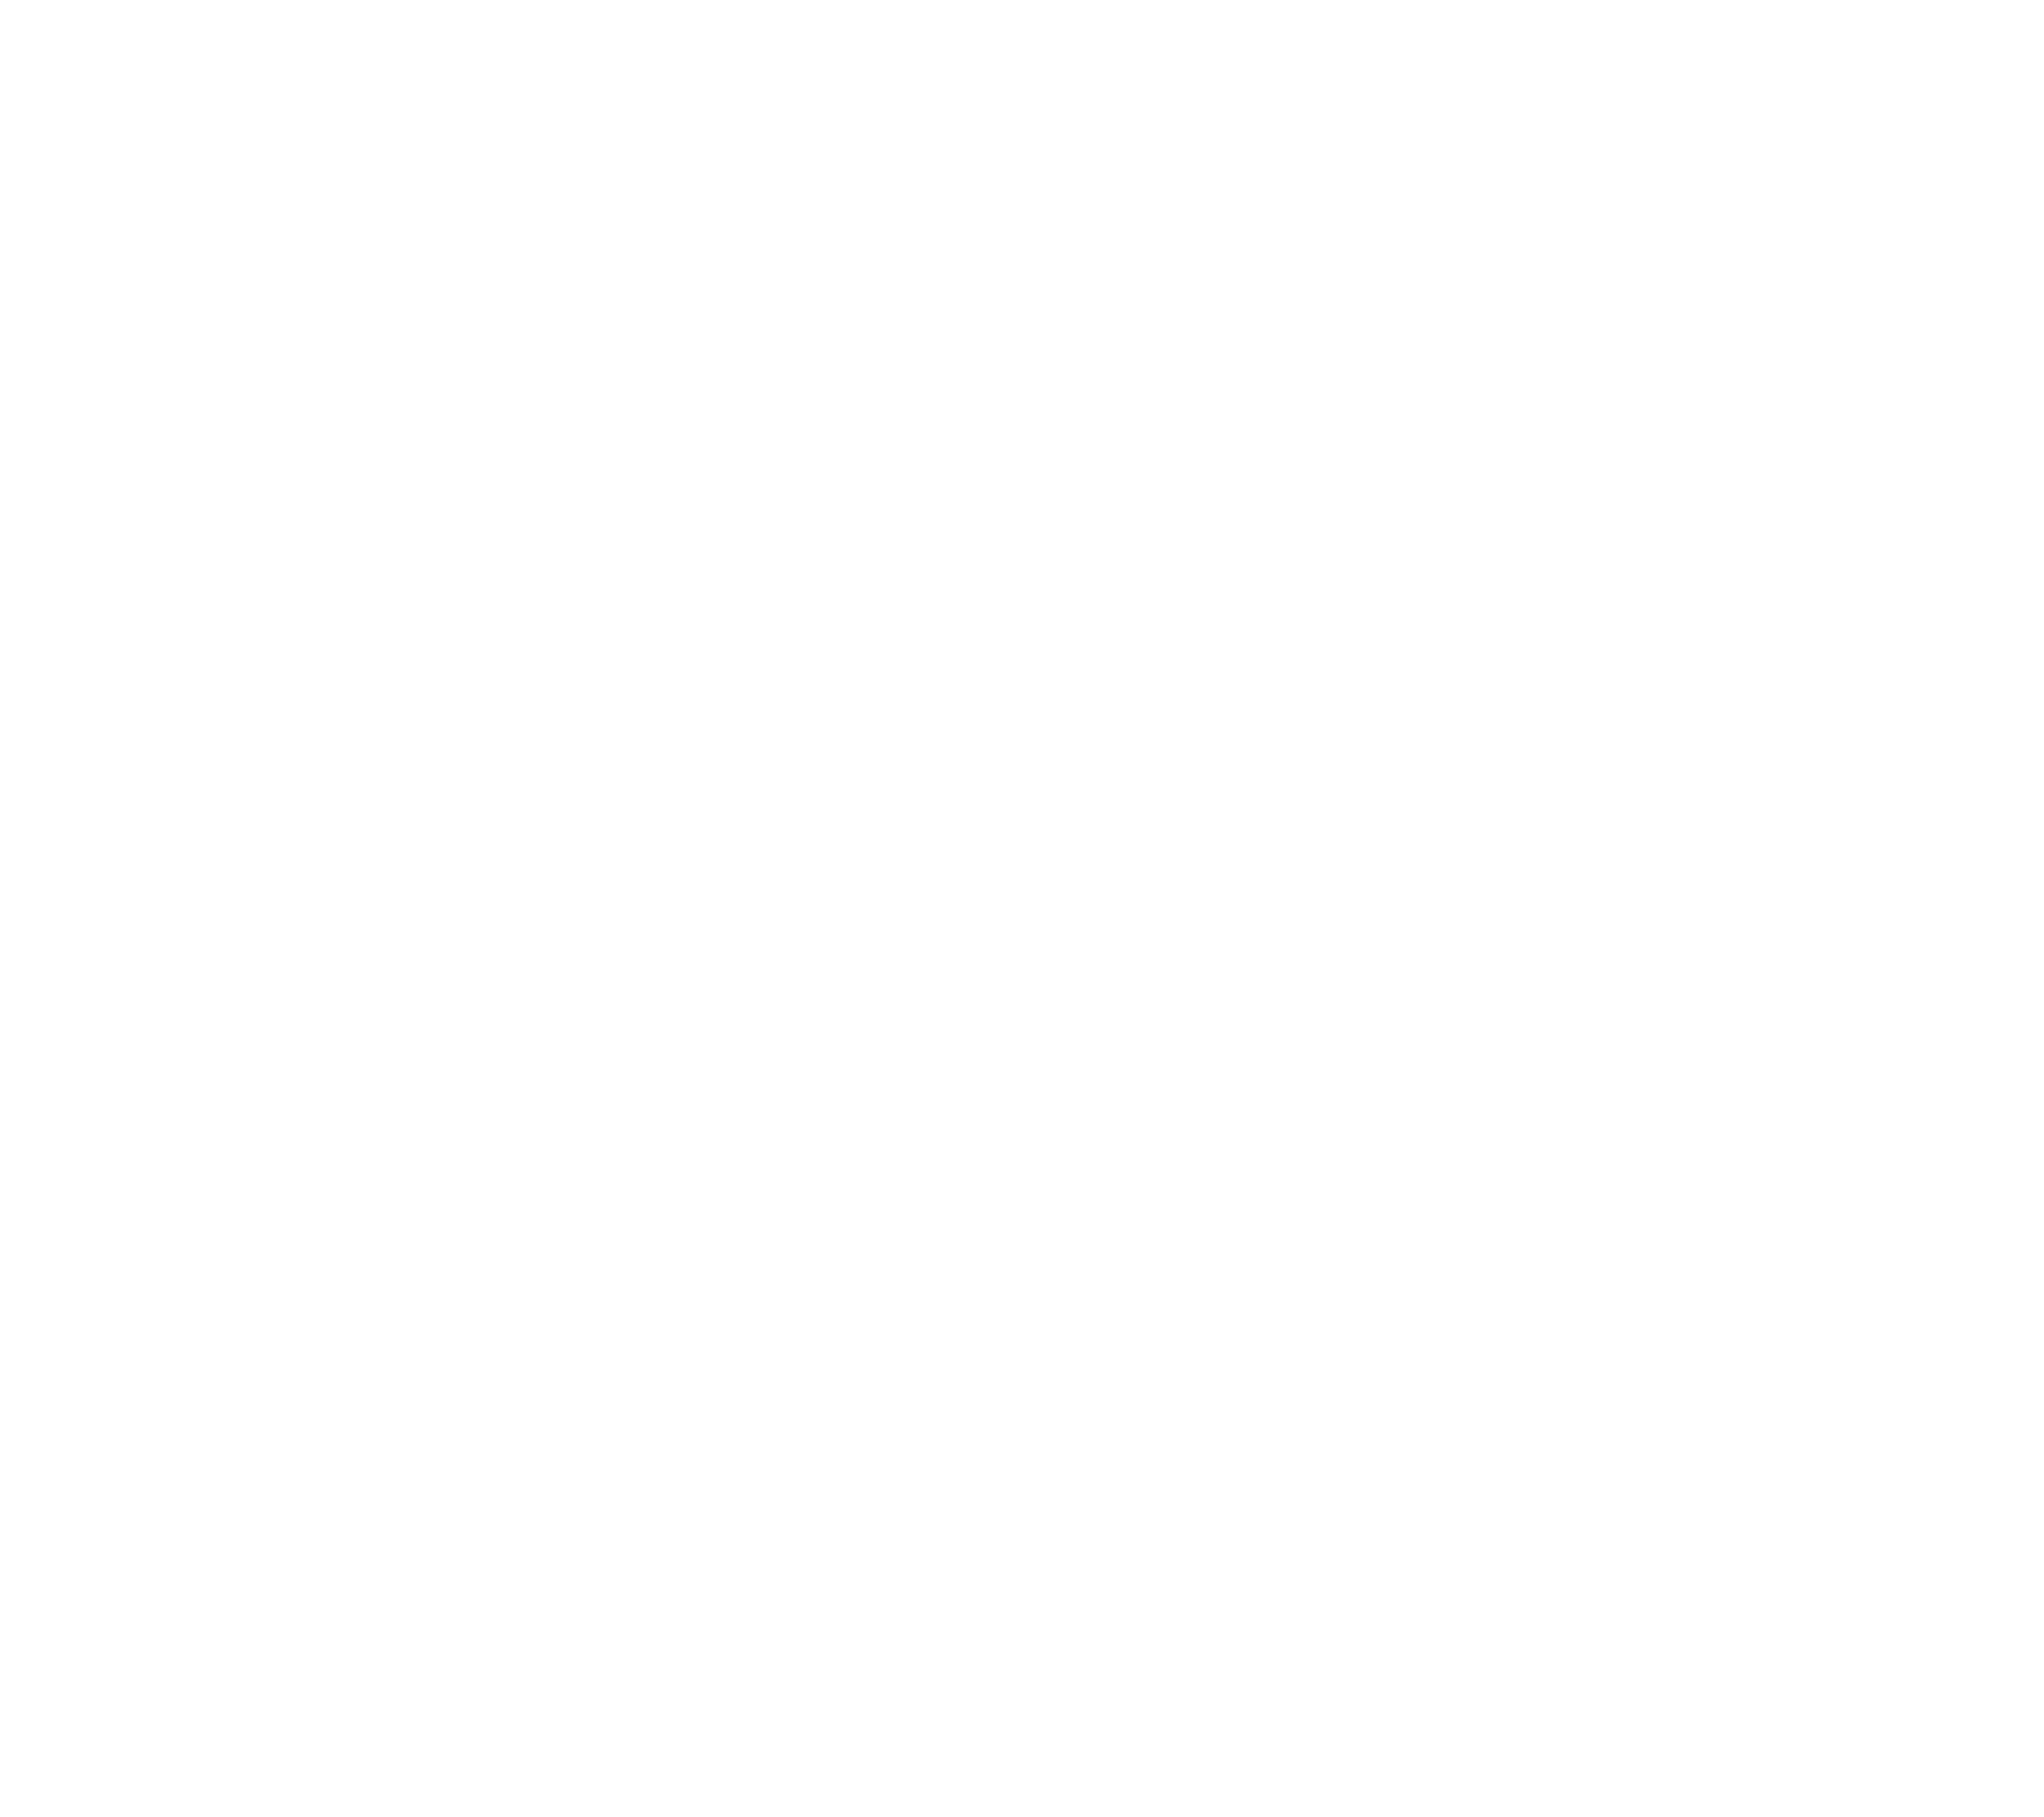 triangle symbol in the button